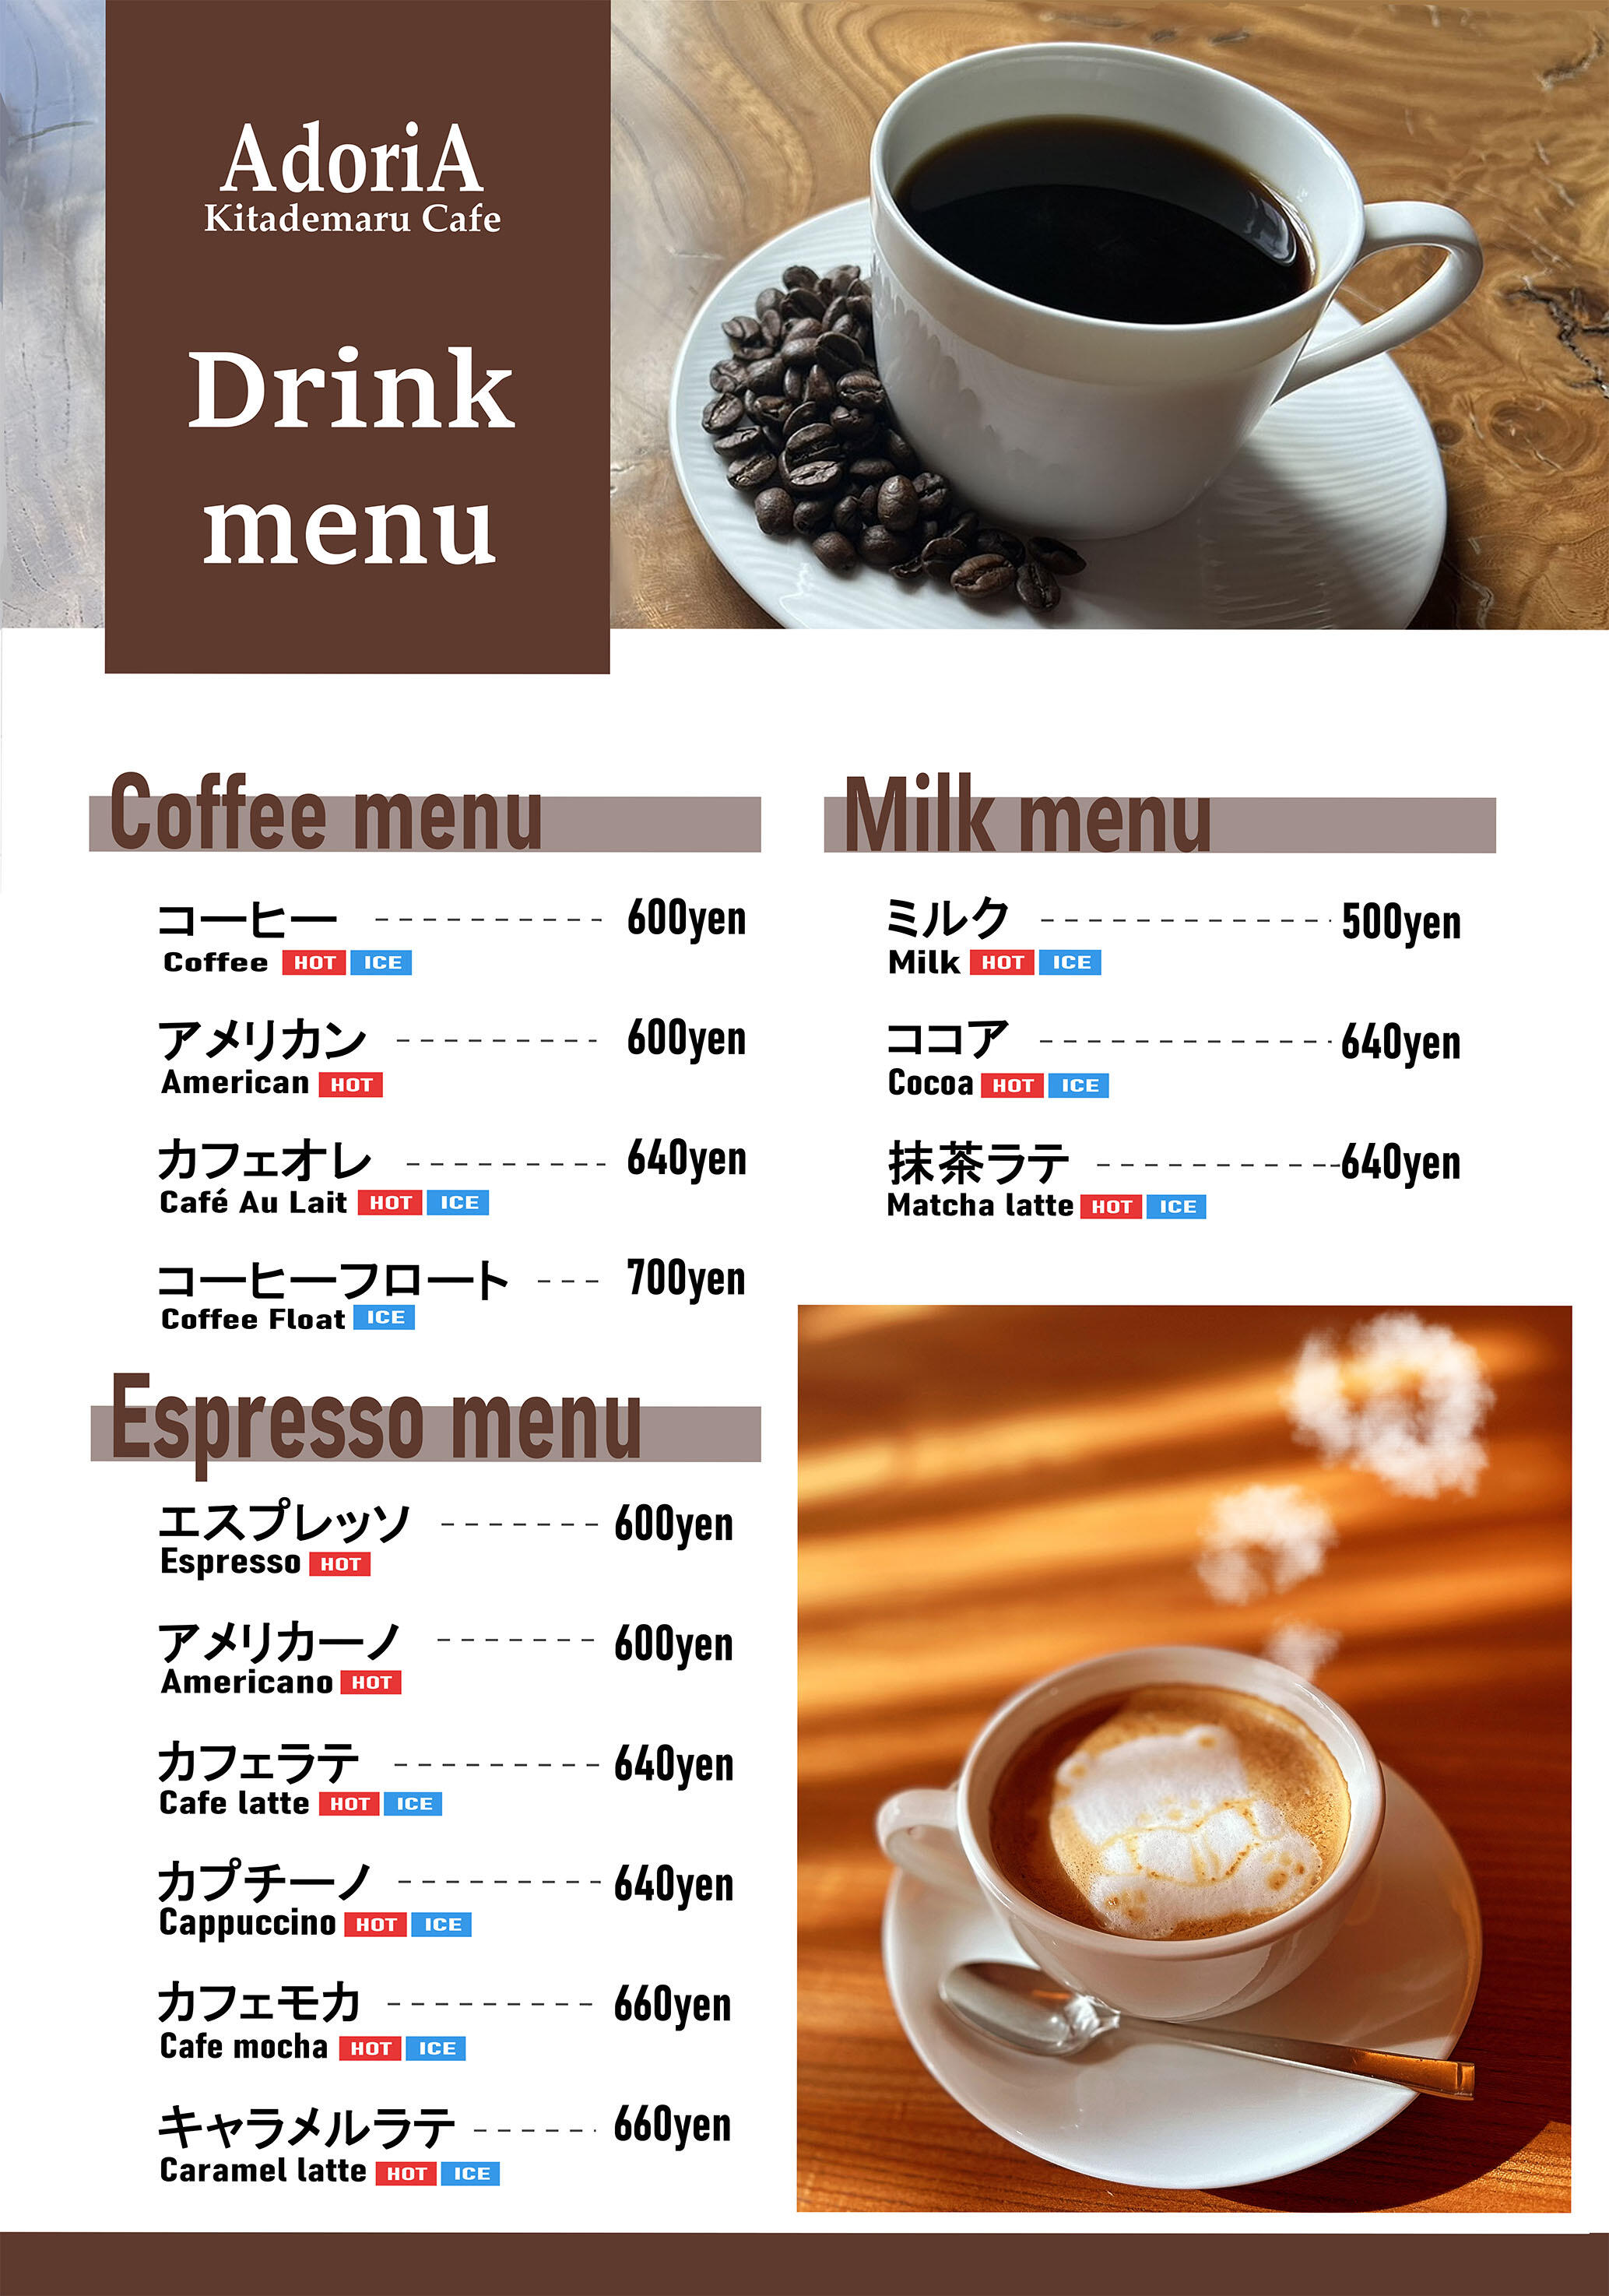 ①DRINK(COFFEE)3.jpg